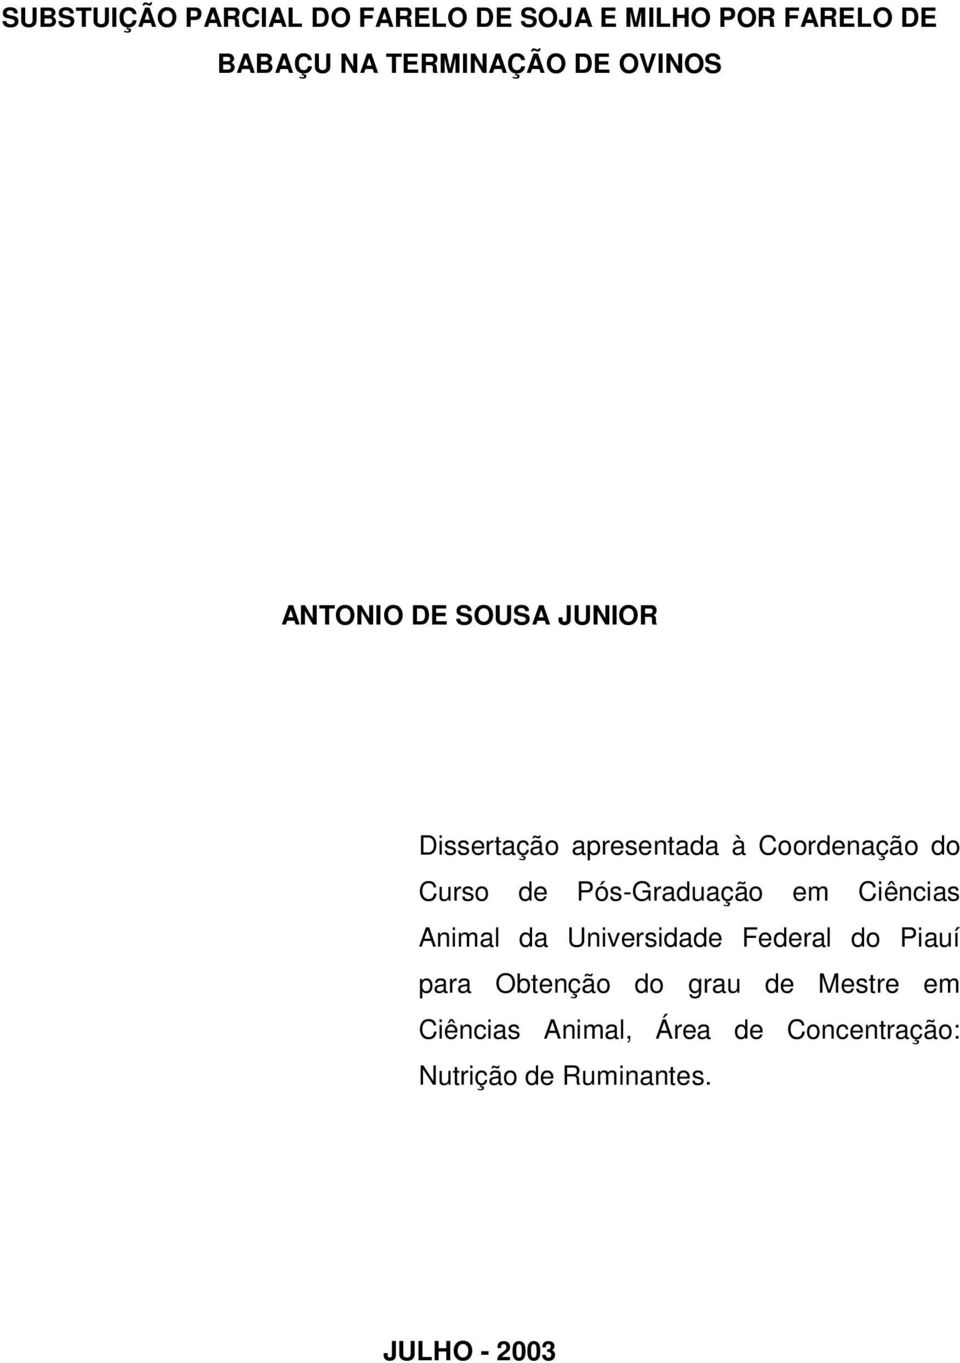 Pós-Graduação em Ciências Animal da Universidade Federal do Piauí para Obtenção do